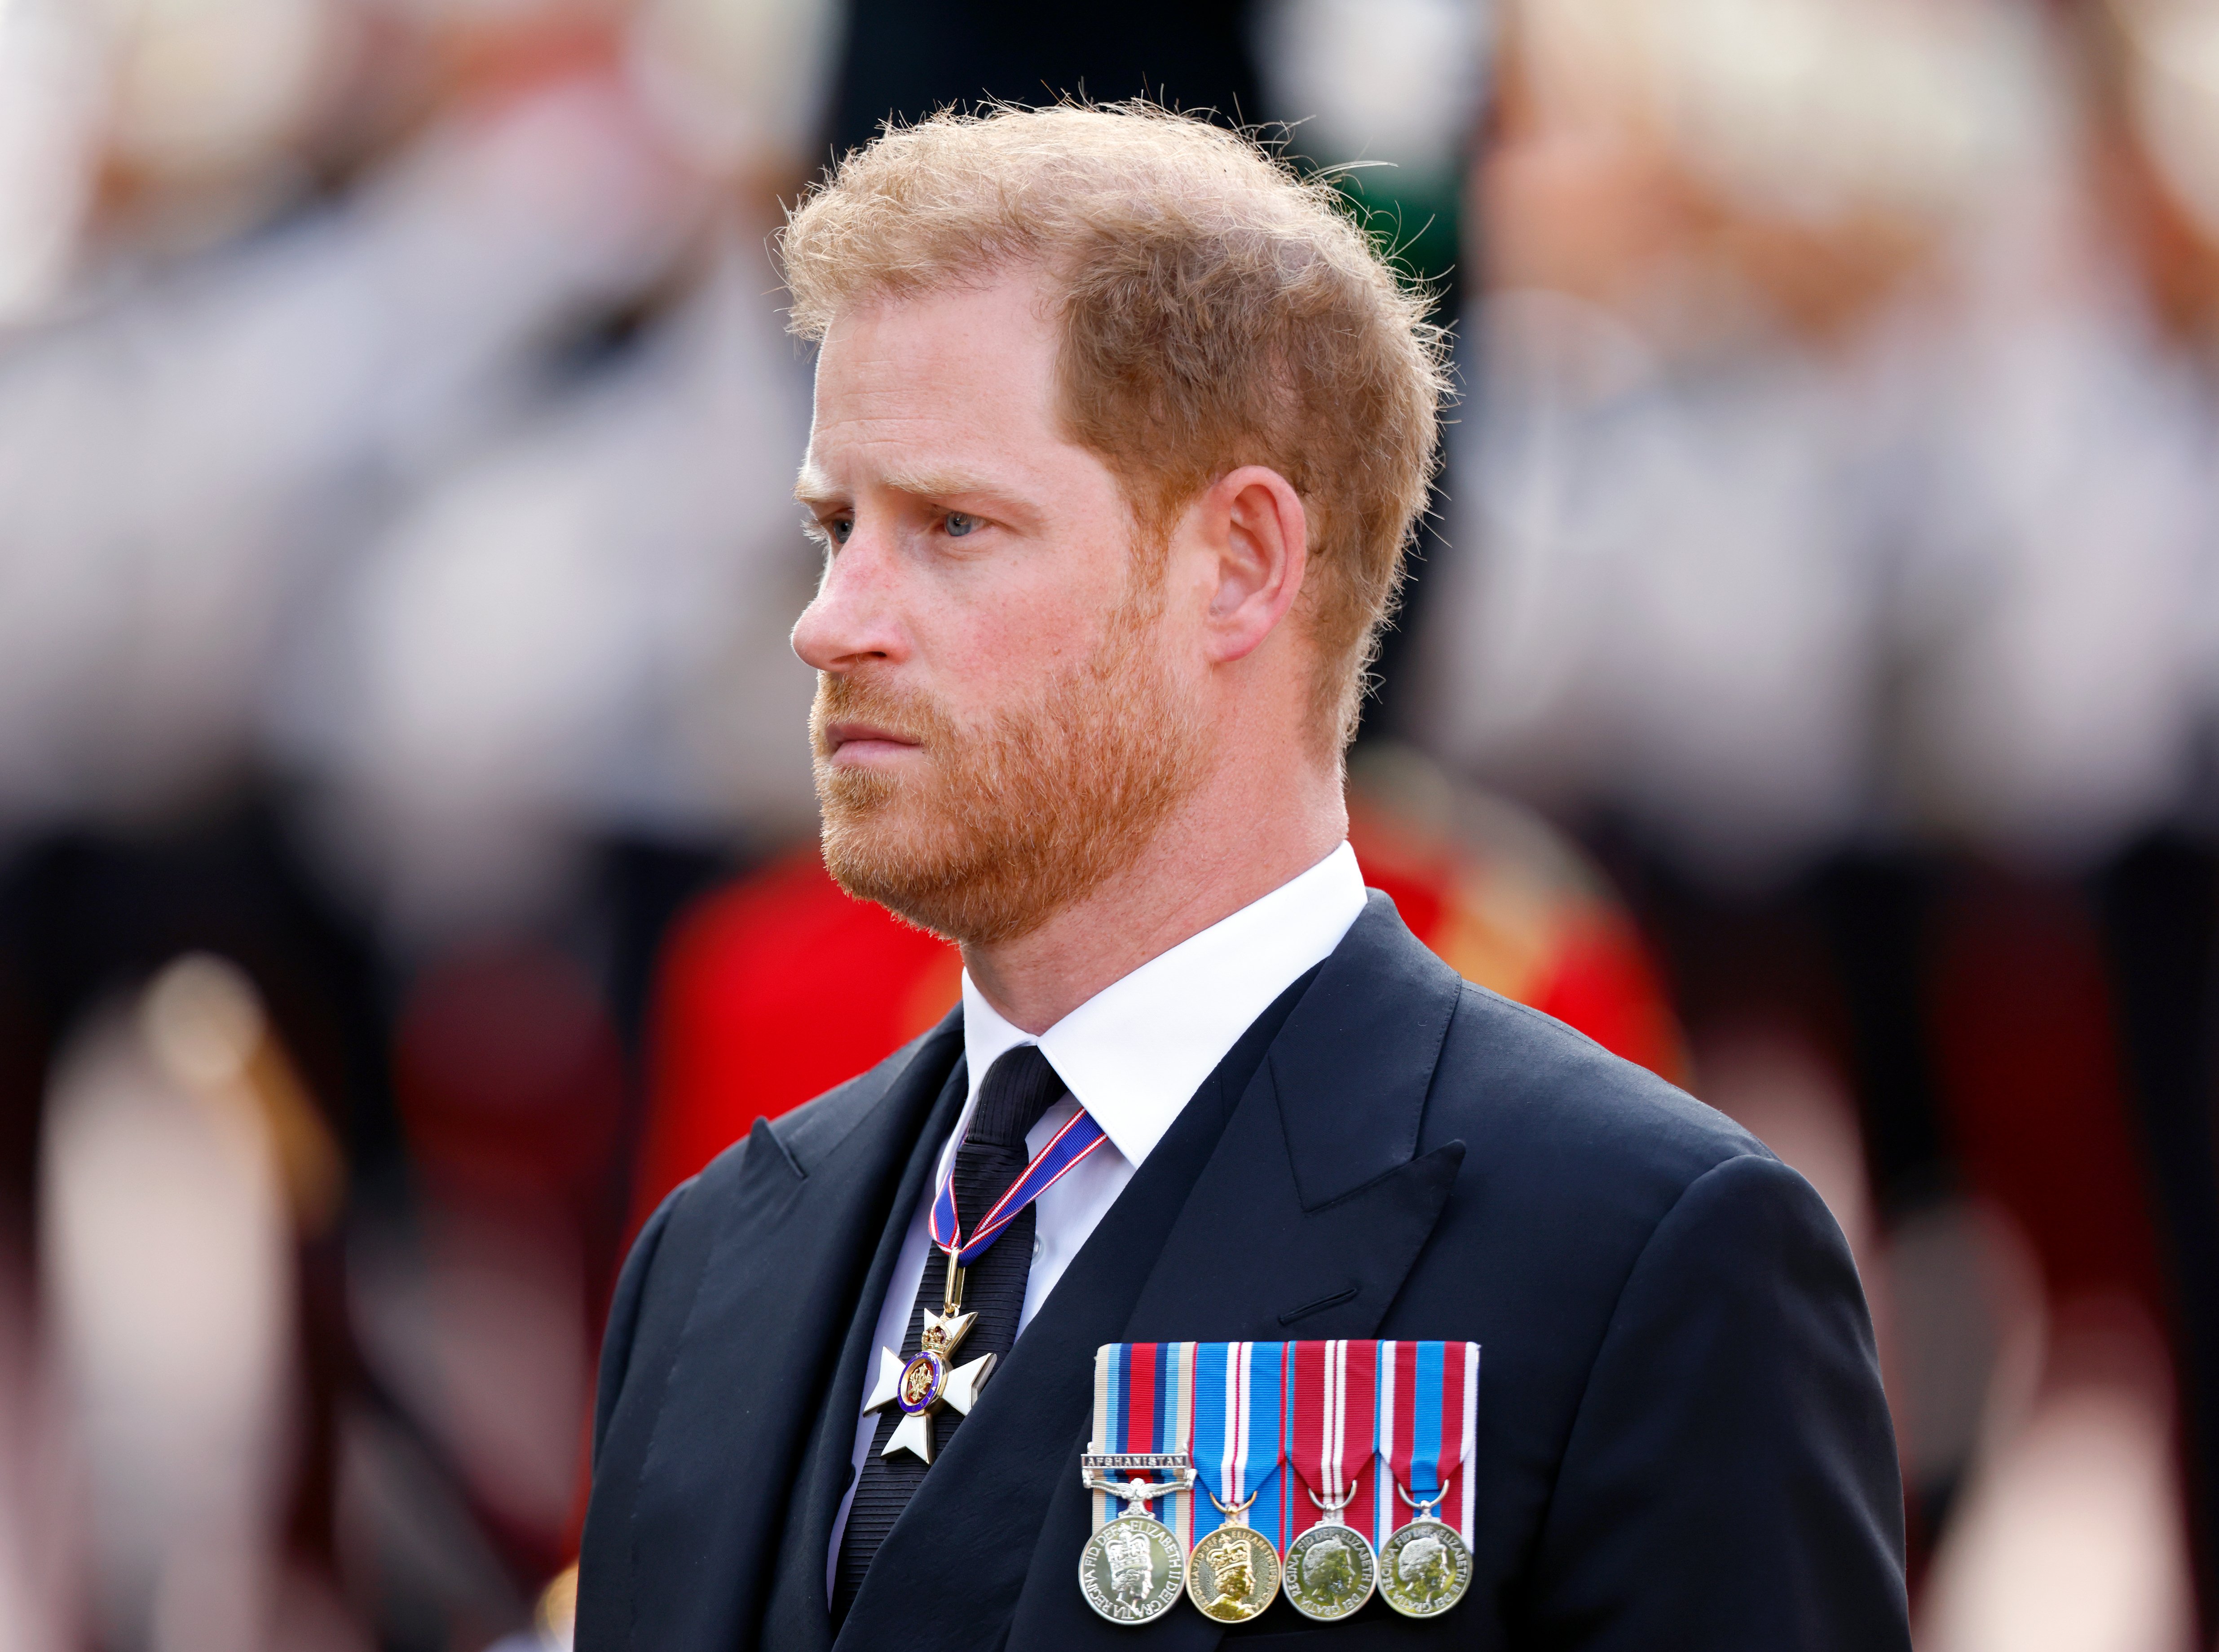 El príncipe Harry, duque de Sussex, camina detrás del ataúd de la reina Elizabeth II mientras es transportado en un carruaje de armas desde el Palacio de Buckingham hasta el Palacio de Westminster antes de su presentación el 14 de septiembre de 2022 en Londres, Reino Unido. | Foto: Getty Images